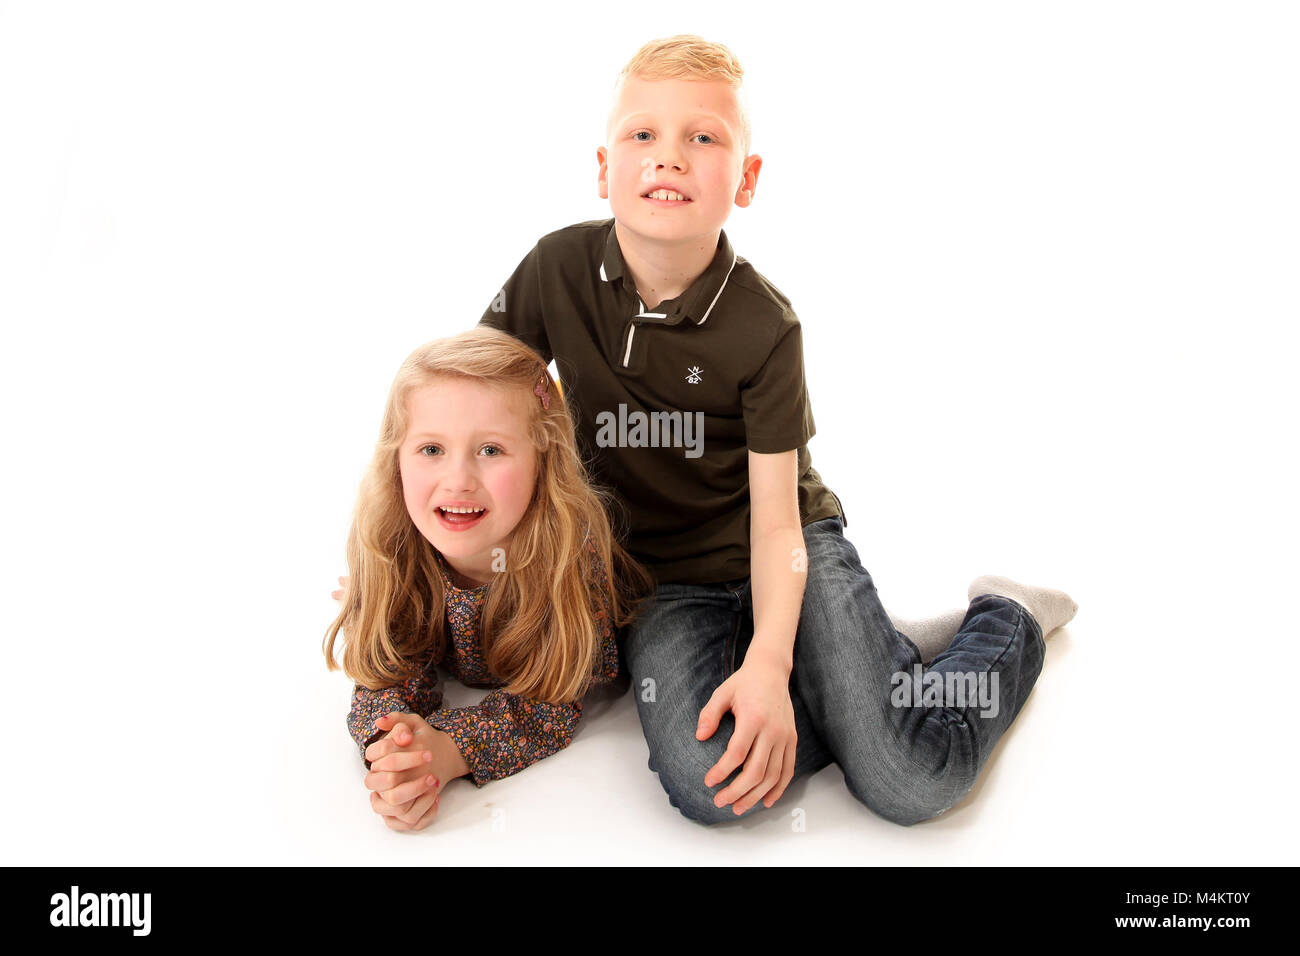 Bruder Und Schwester Lachen Und Spaß Haben Glückliche Kindheit Stockfotografie Alamy